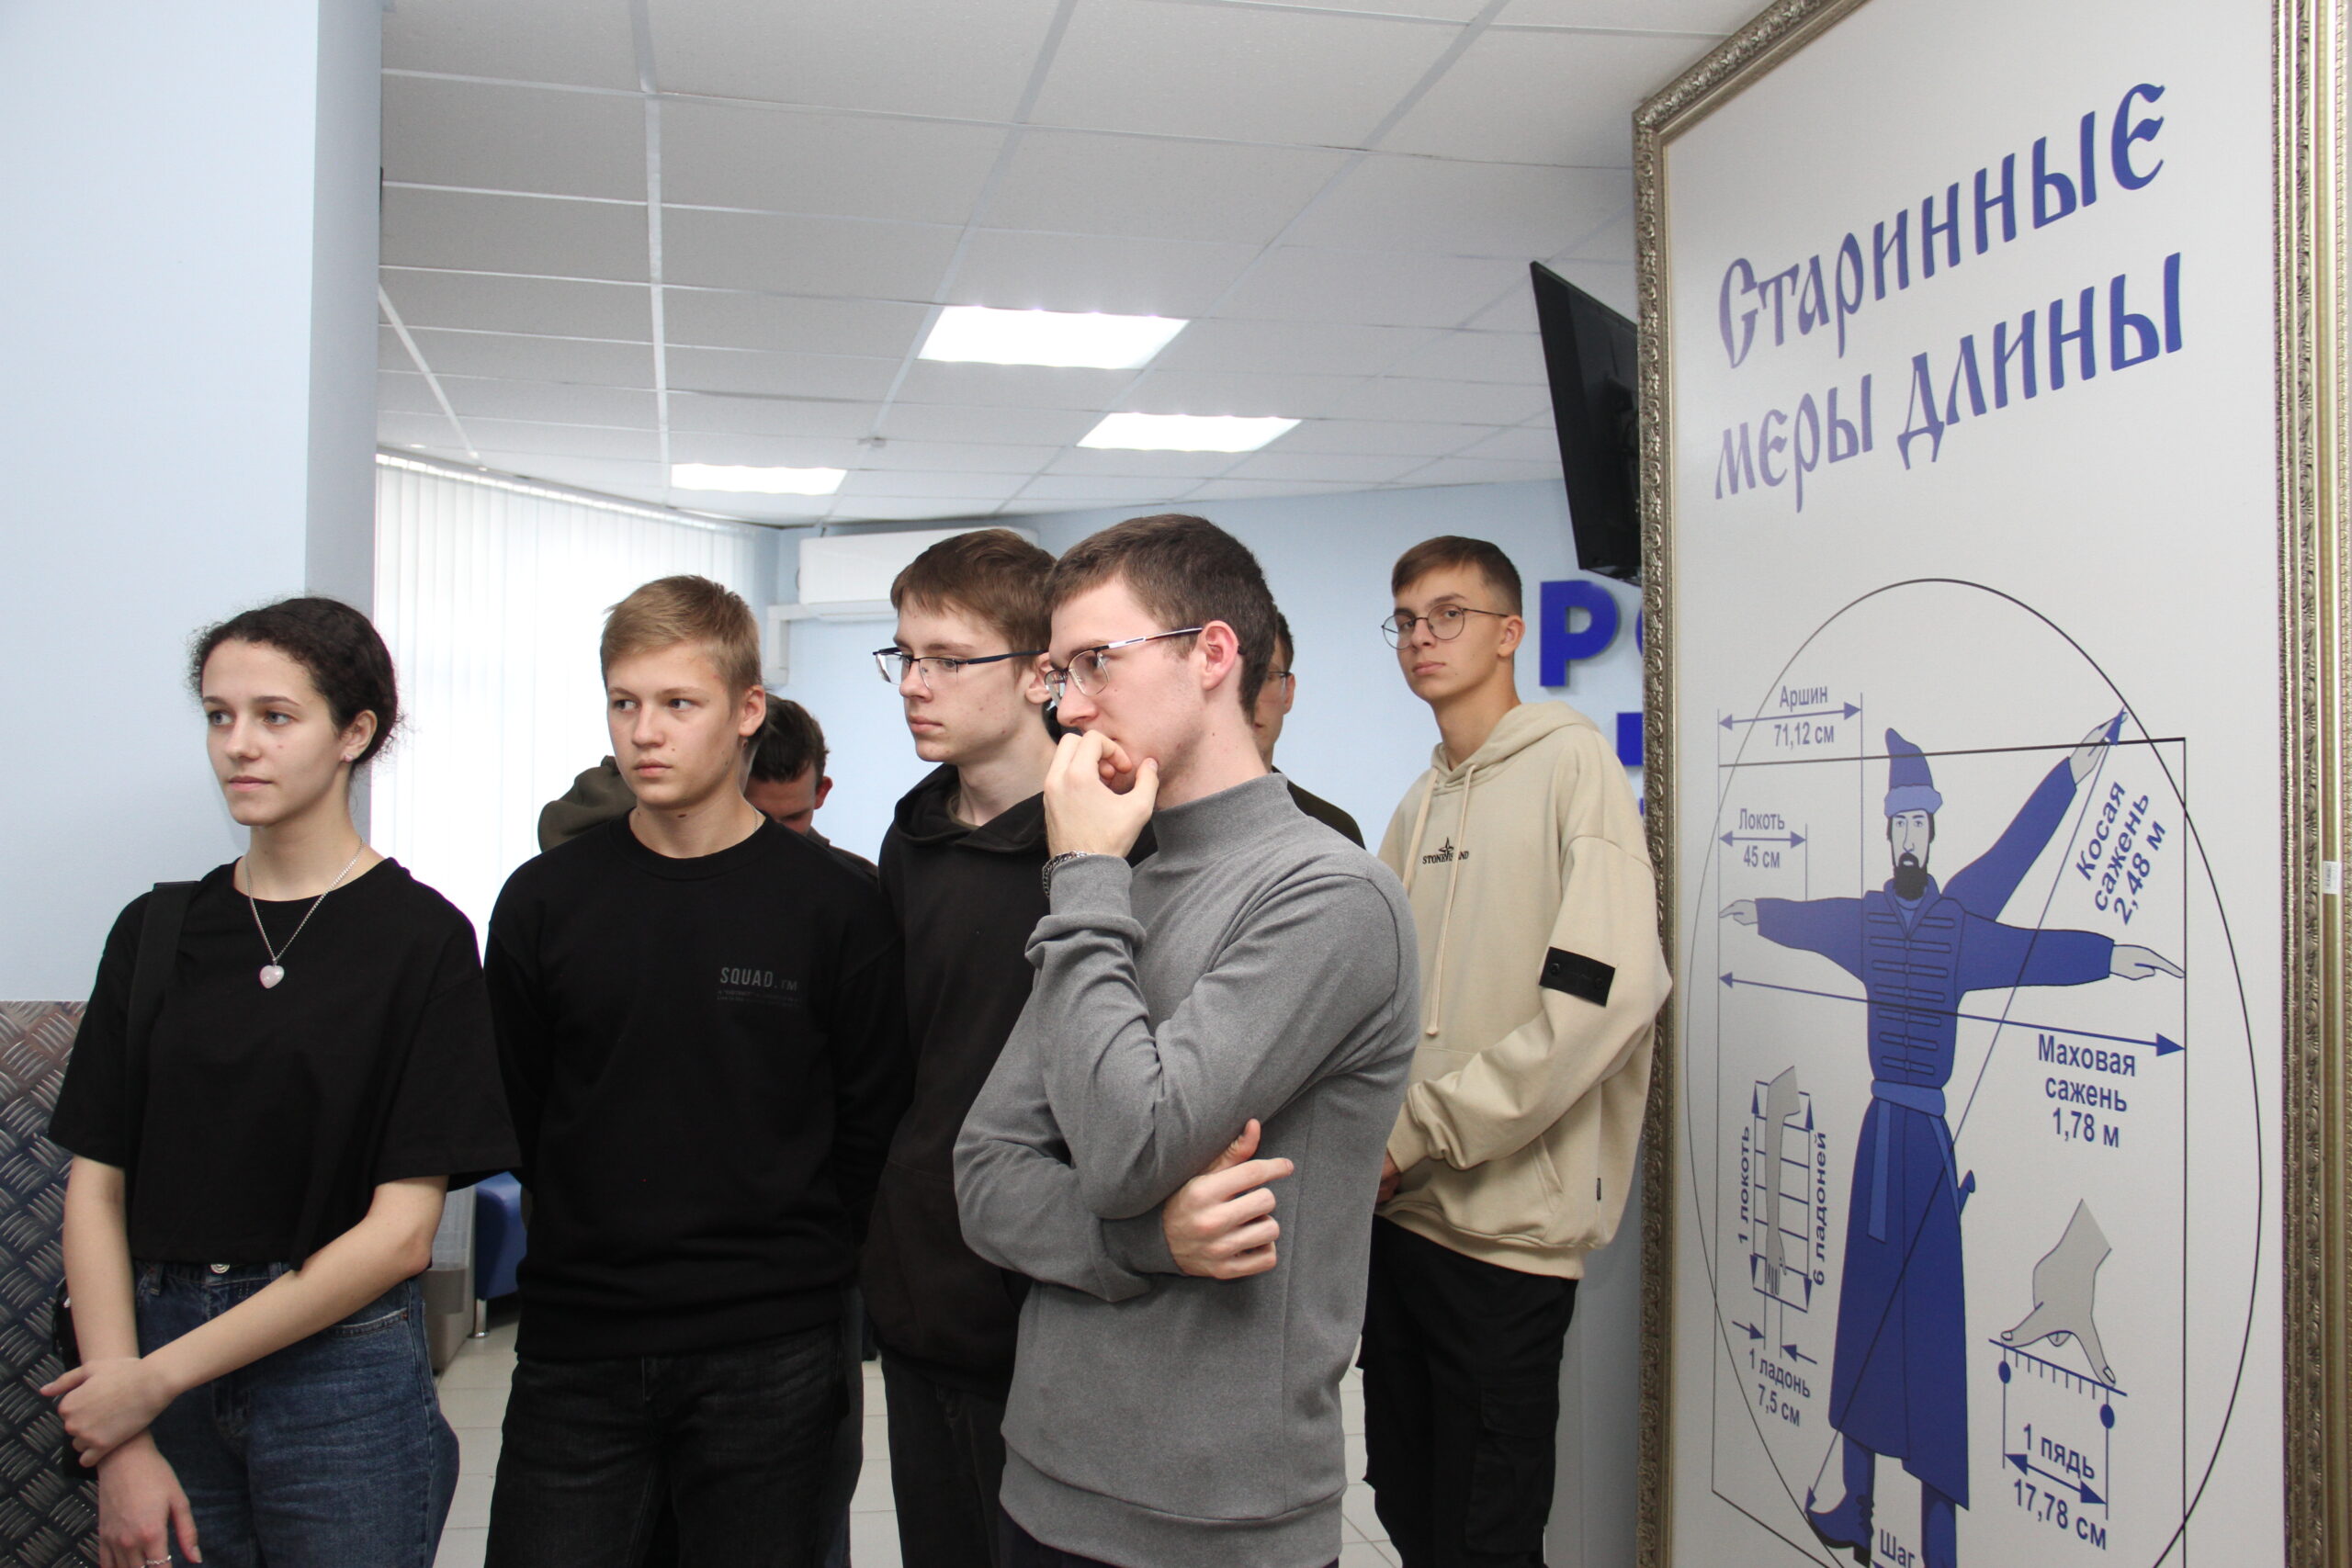 ЦСМ Ставрополь фото коллектива 2021. Студент 3 курса группы